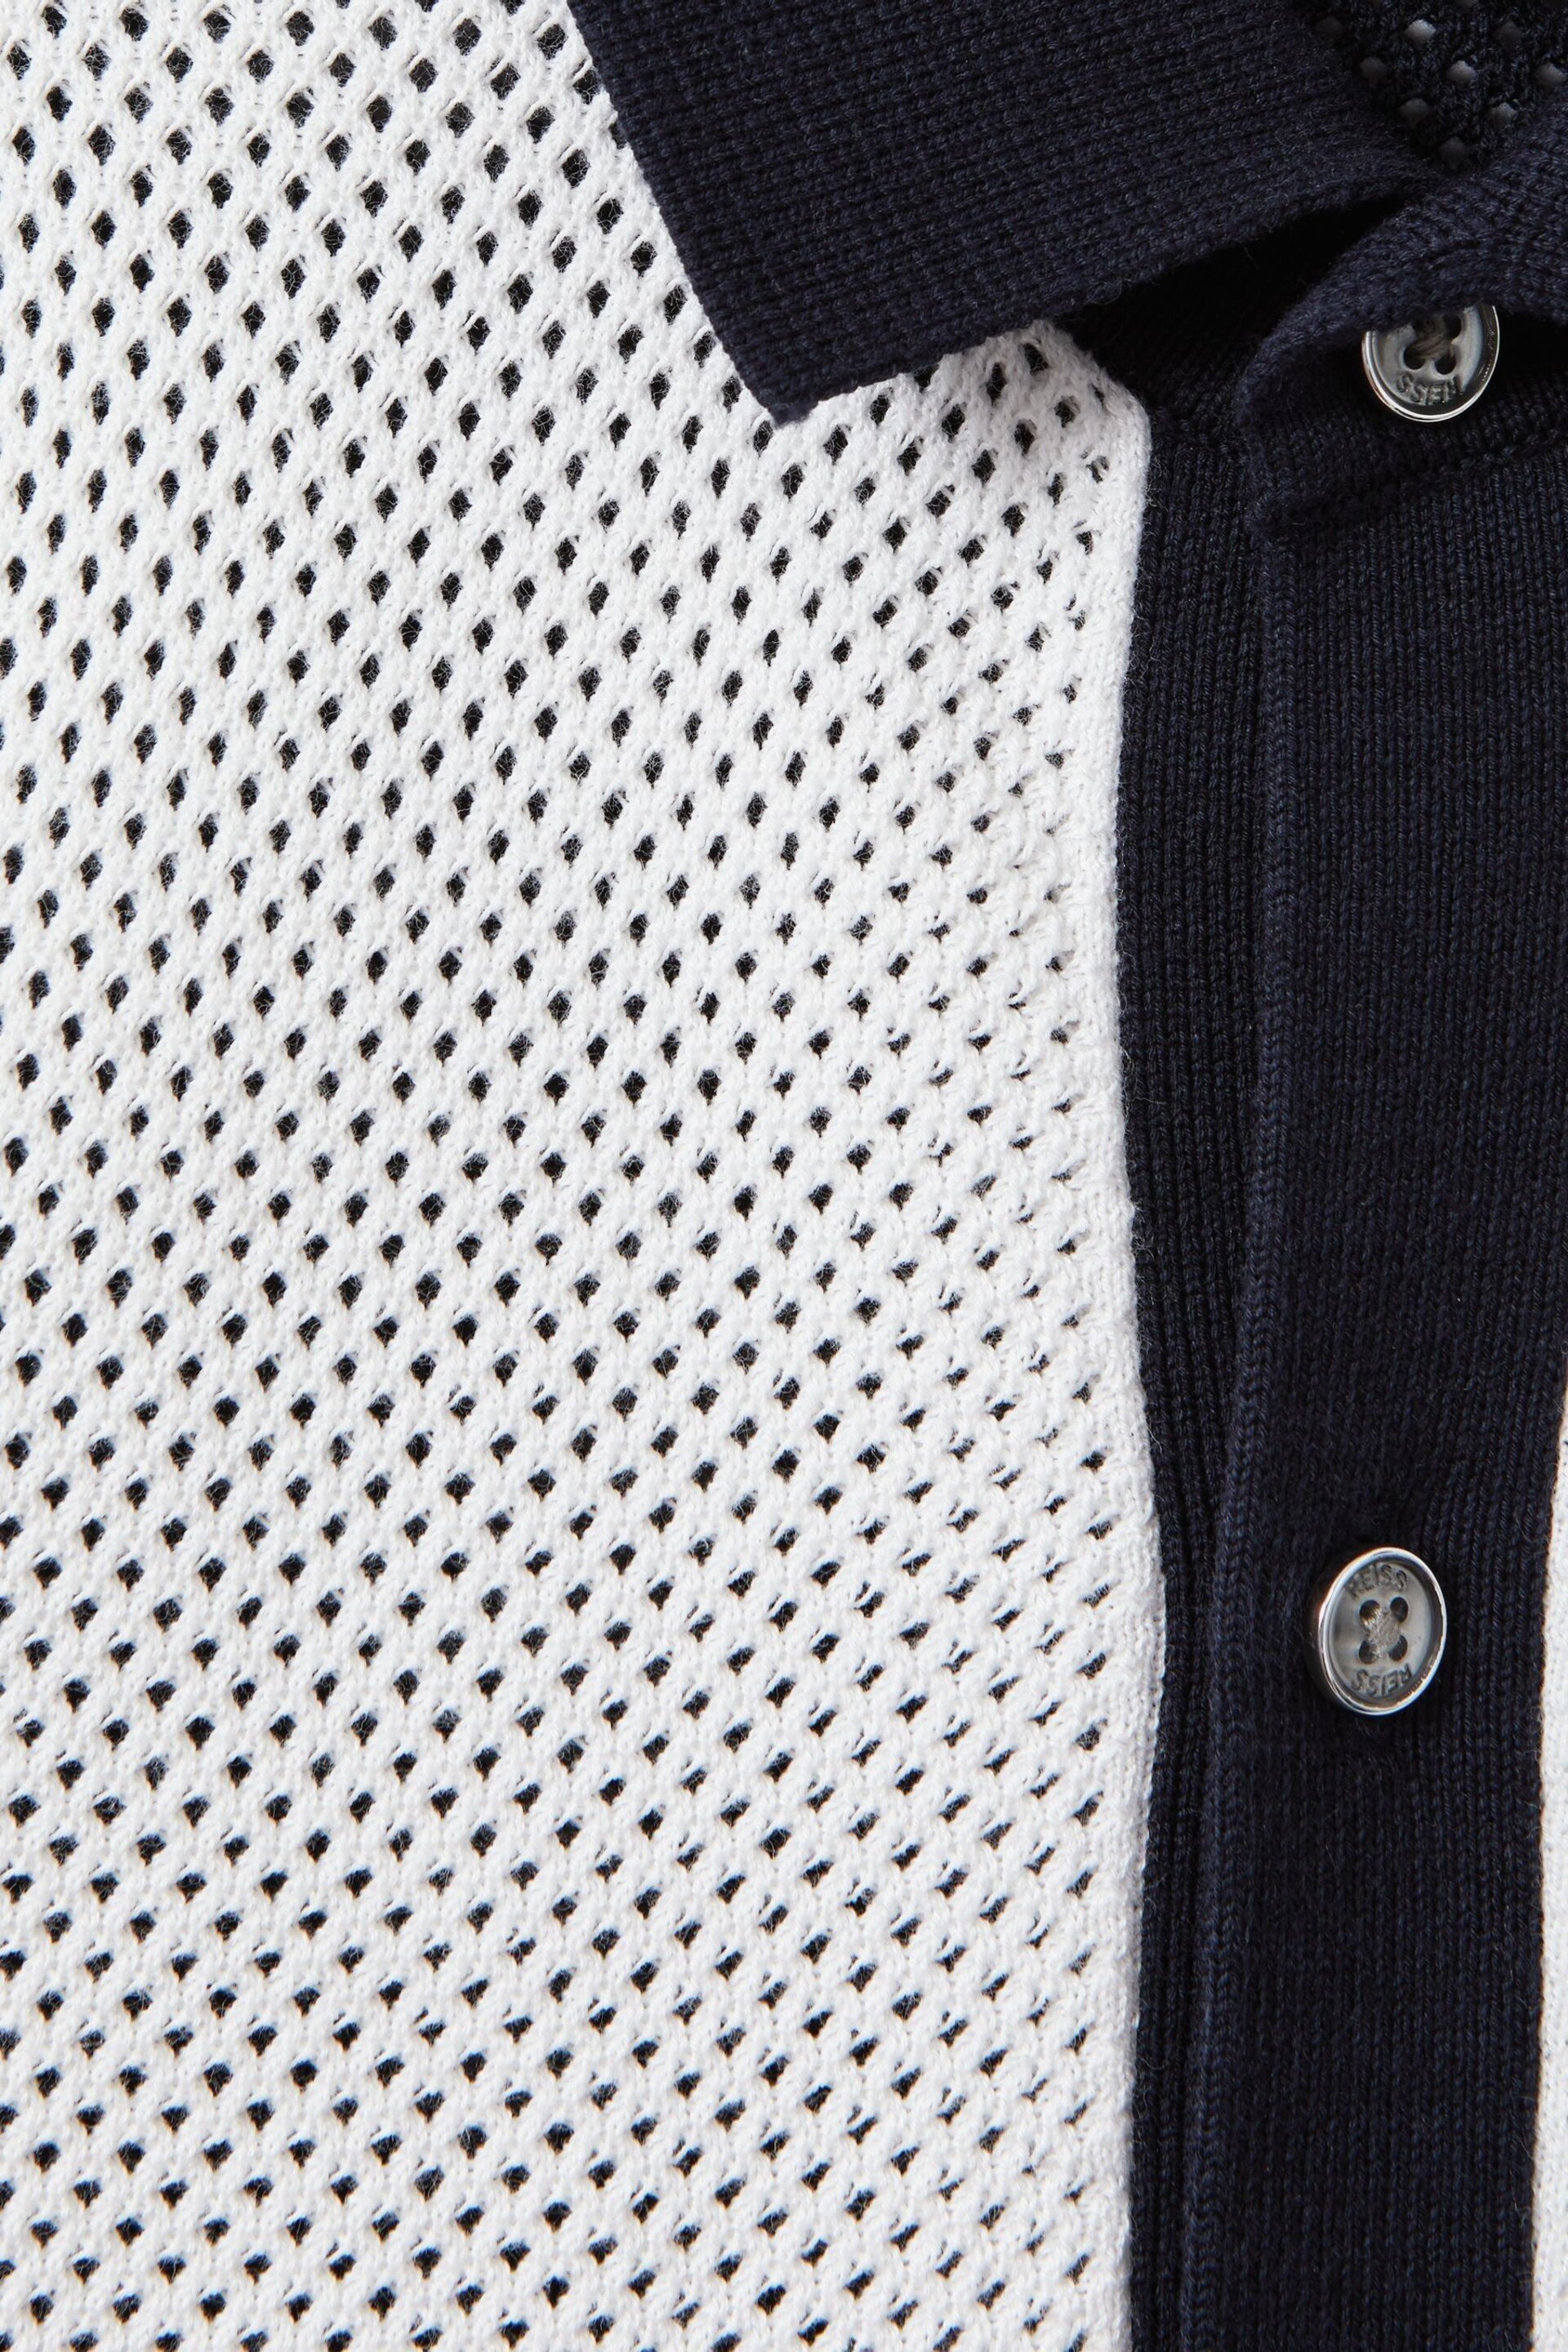 Reiss Navy/Optic White Misto Senior Cotton Blend Open Stitch Shirt - Image 4 of 4